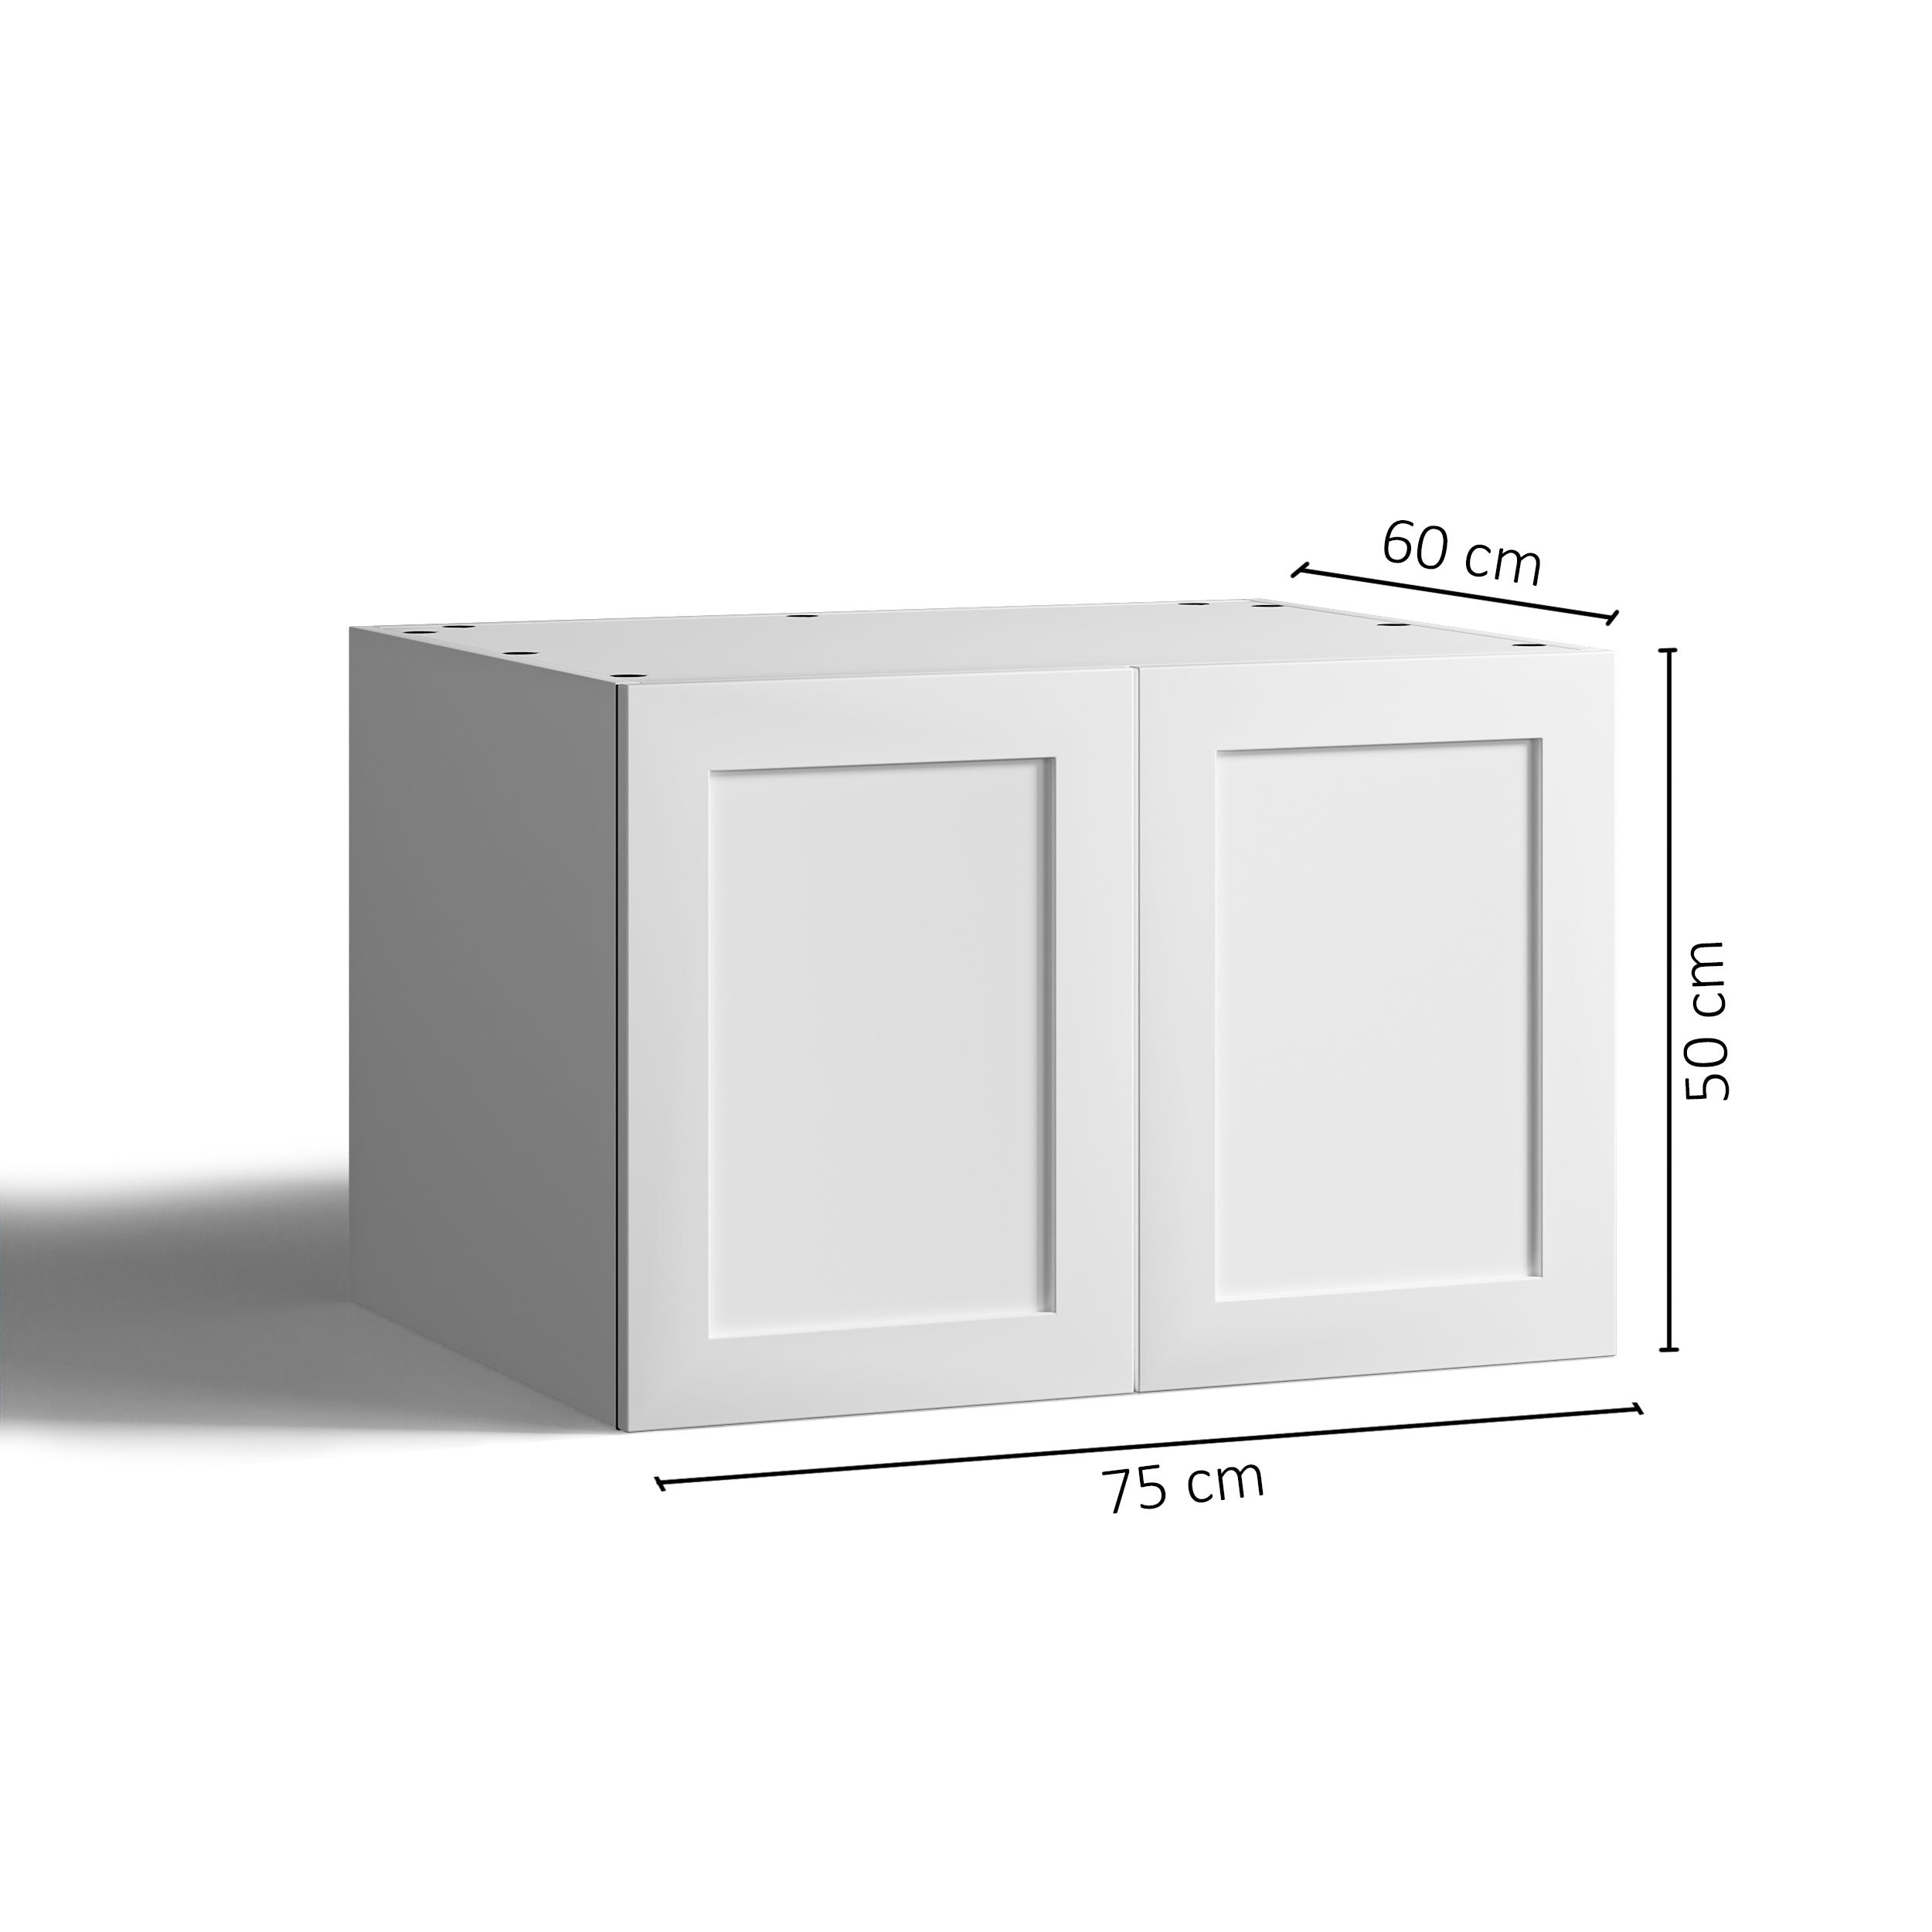 75x50 - Cabinet (58cm D) w 2 Doors - Shaker - PAX